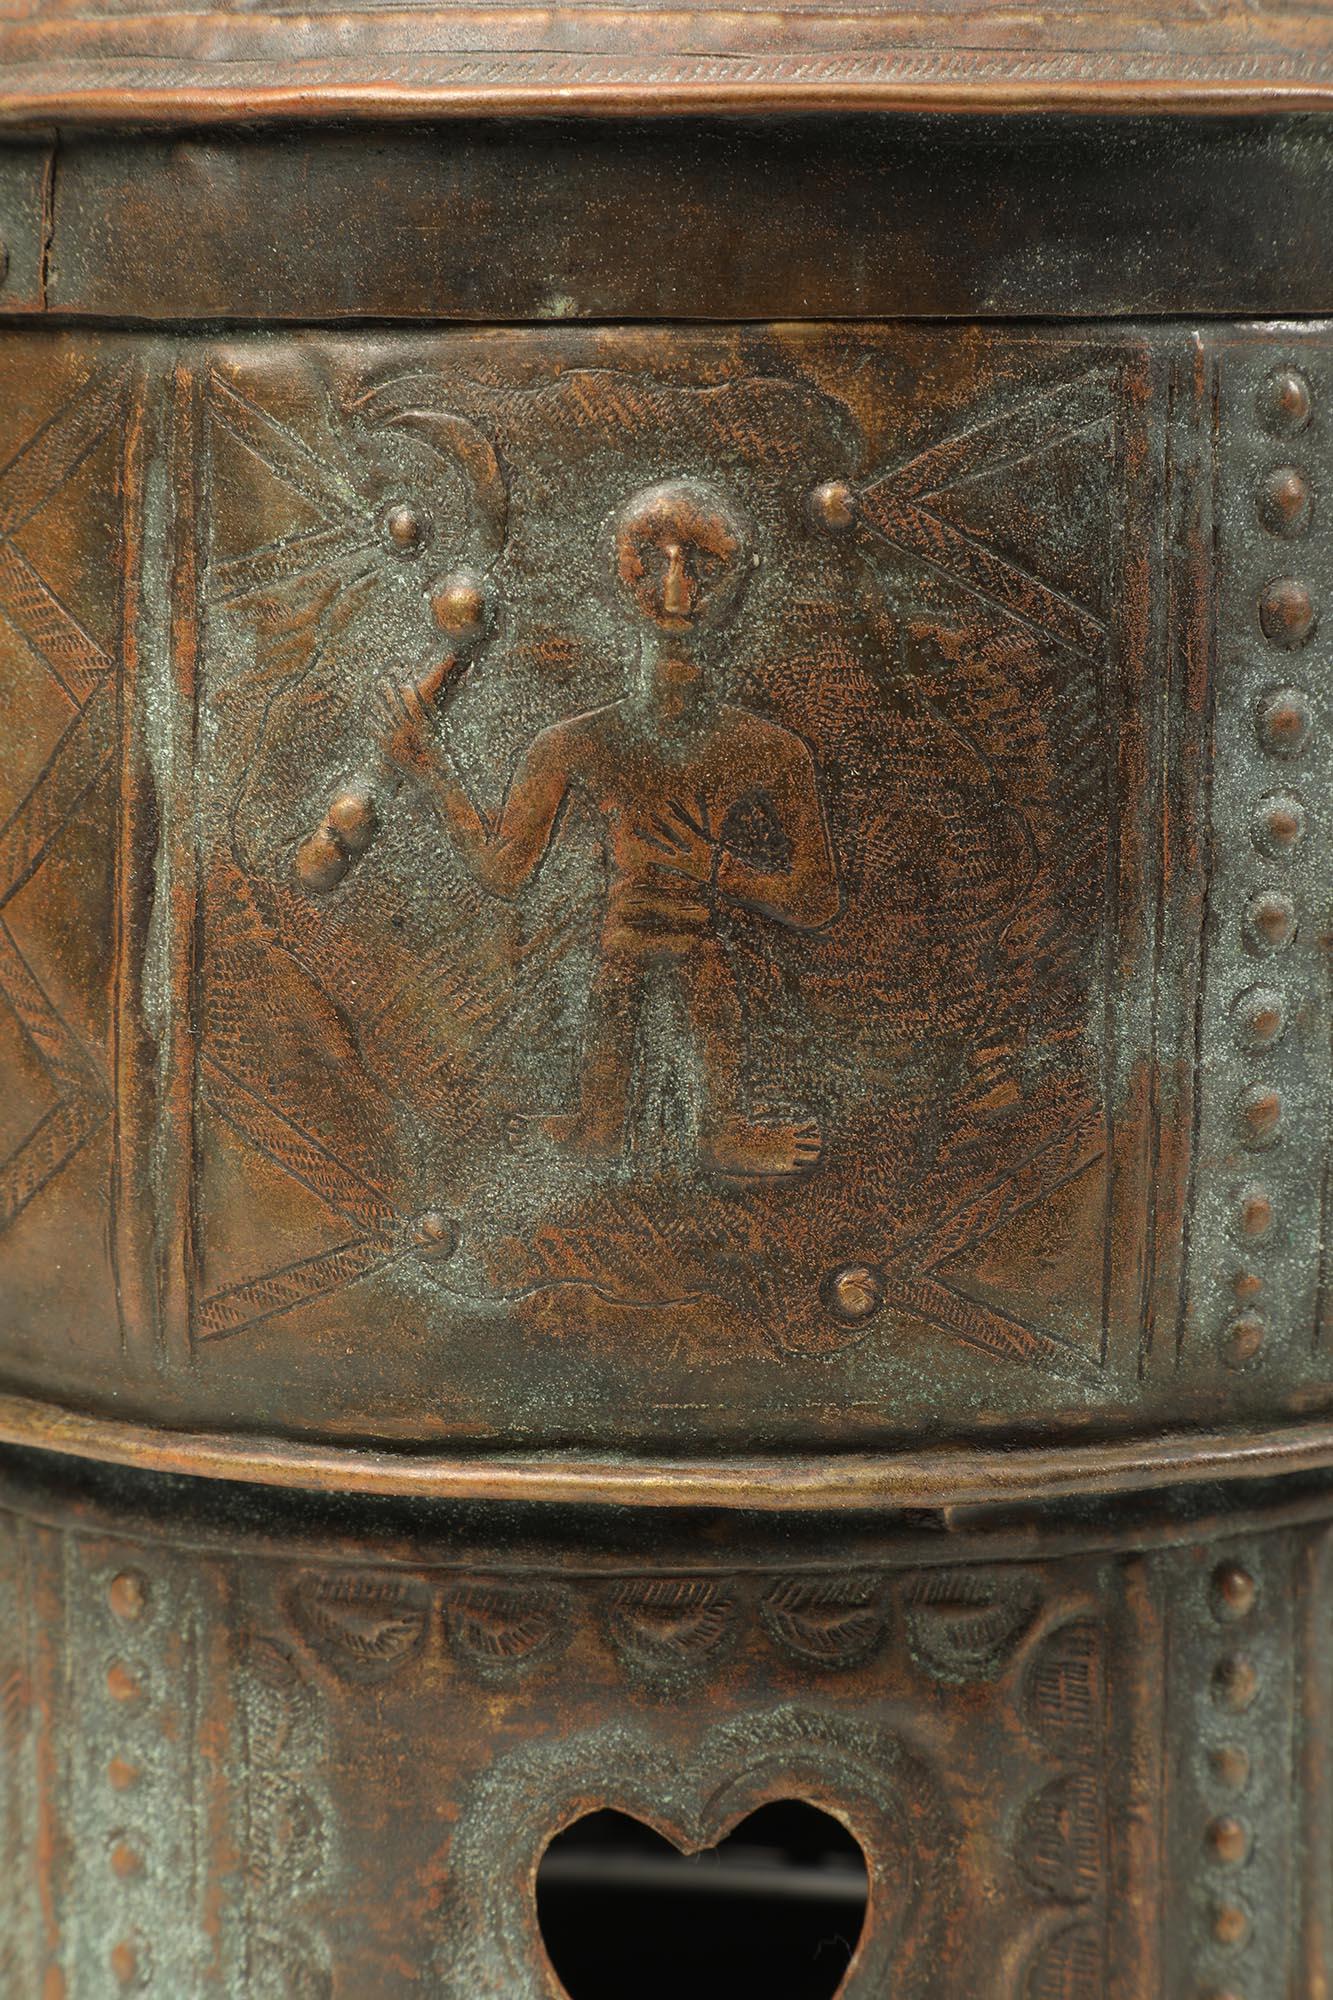 Boîte à trésor à couvercle en laiton ou en bronze repoussé et taillé, provenant du peuple Akan du Ghana, Afrique de l'Ouest, 20e siècle. Les images comprennent des figures humaines, des sandales, des épées et des animaux. Ces images sont liées aux